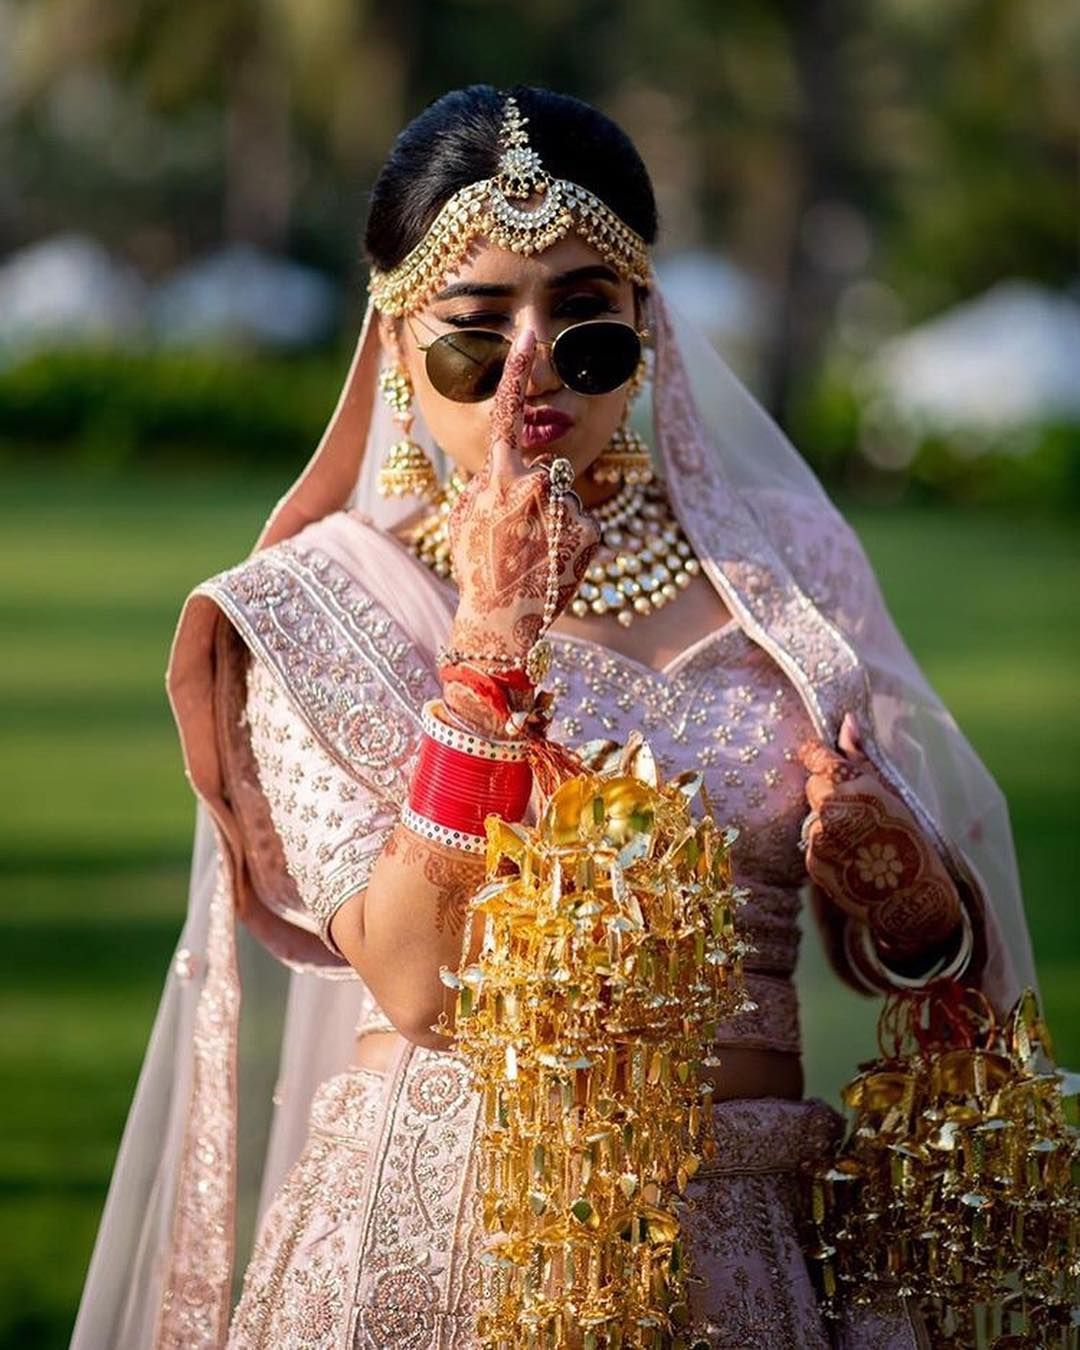 Cool Bridal Wedding Shoot Poses- swagger shades